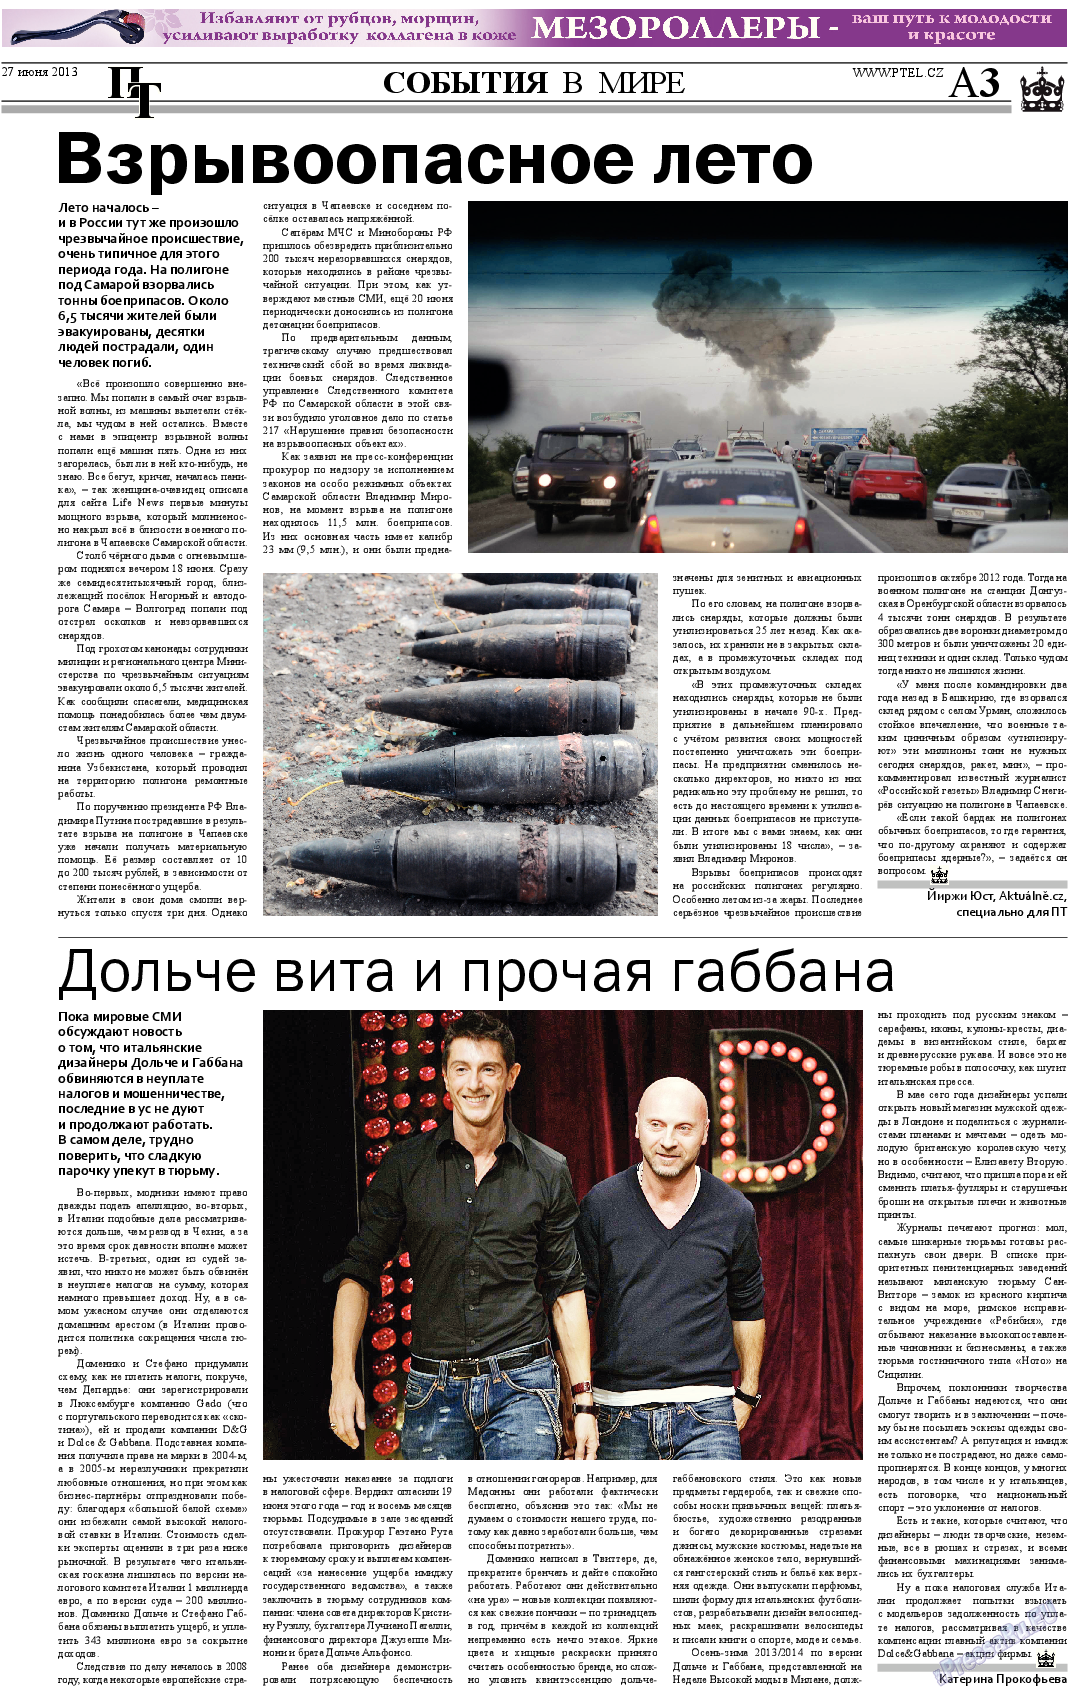 Пражский телеграф (газета). 2013 год, номер 25, стр. 3